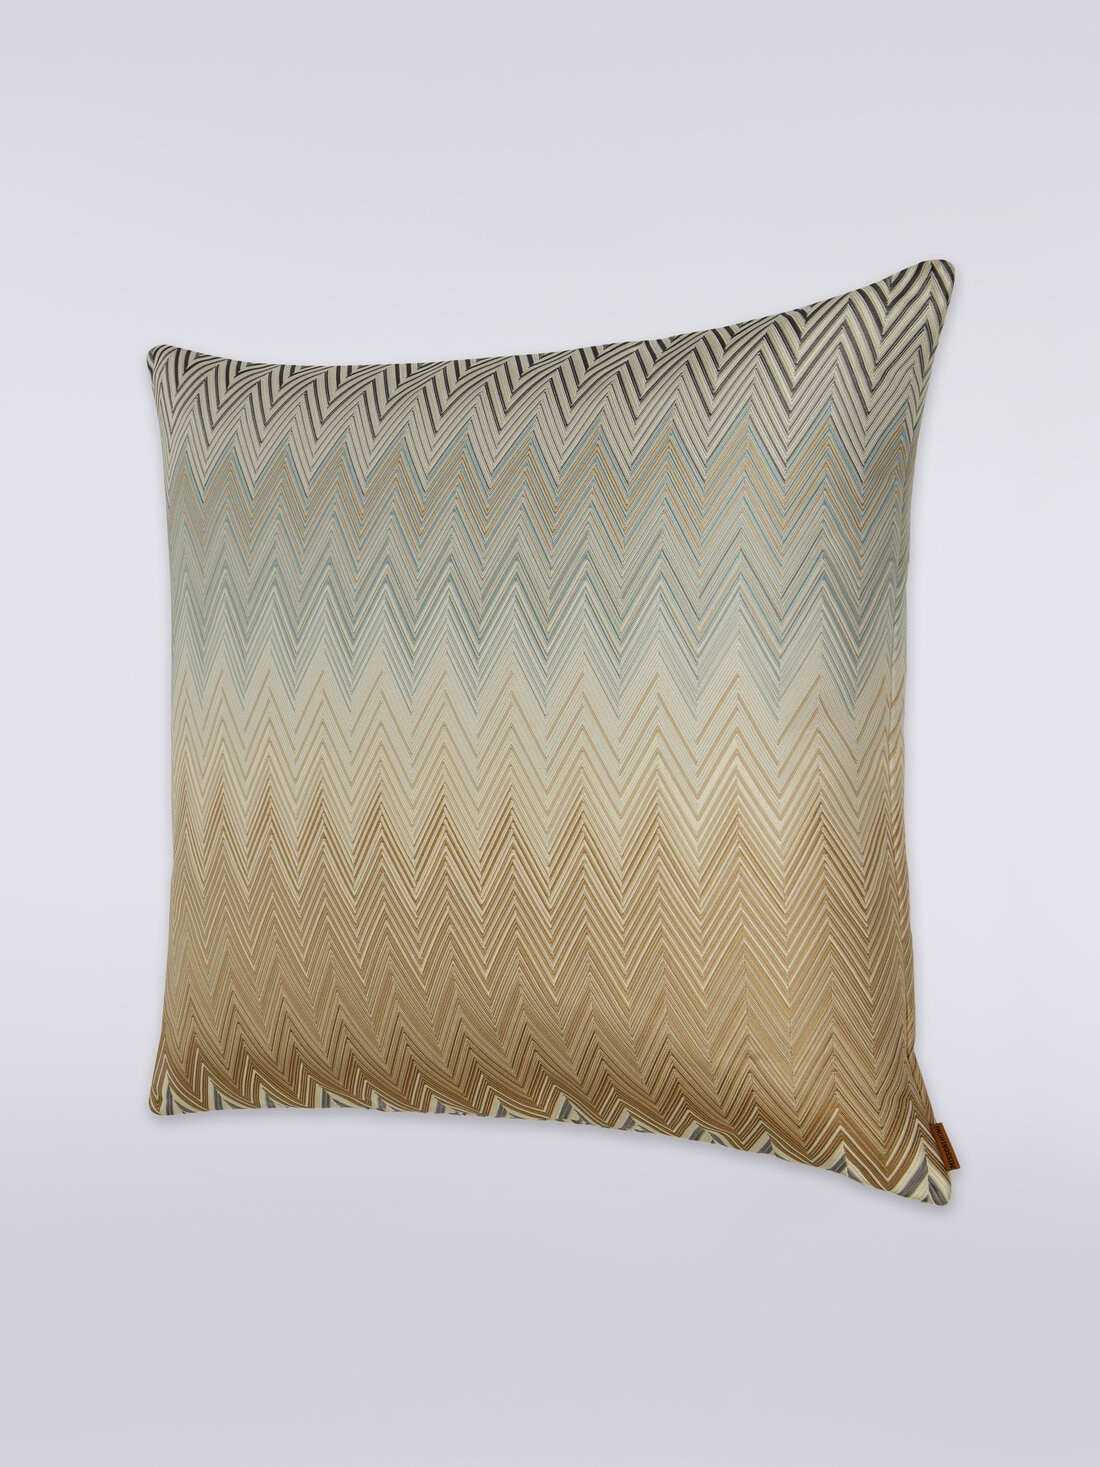 Bastia cushion 50x50 cm, Multicoloured  - 8051275607373 - 1